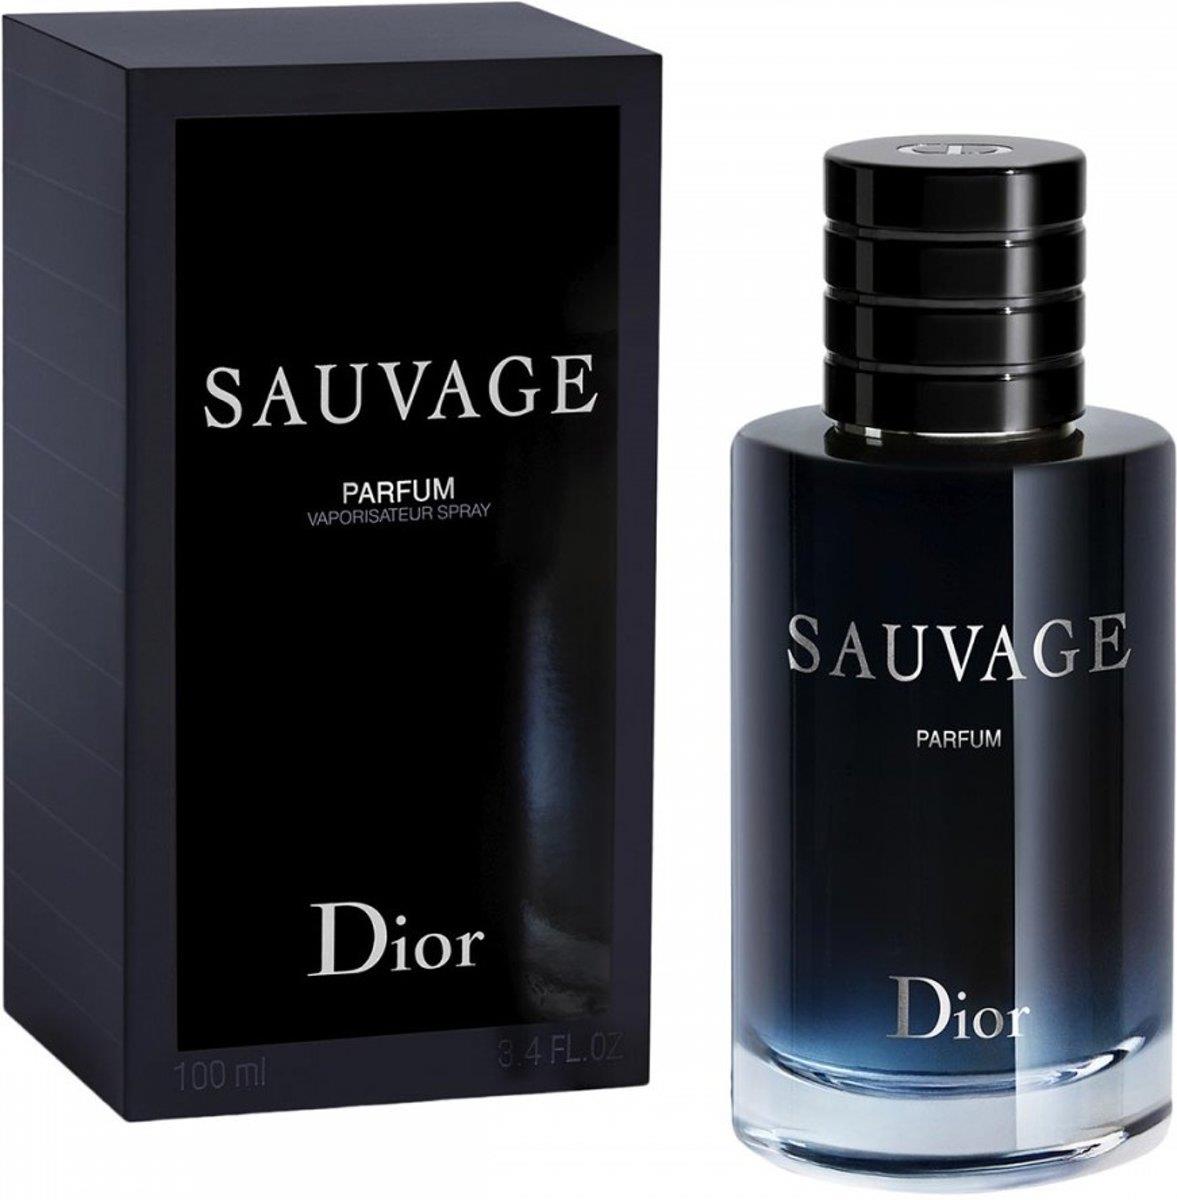 Dior Sauvage Men PARFUM 100ml / 3.4 Fl. Oz